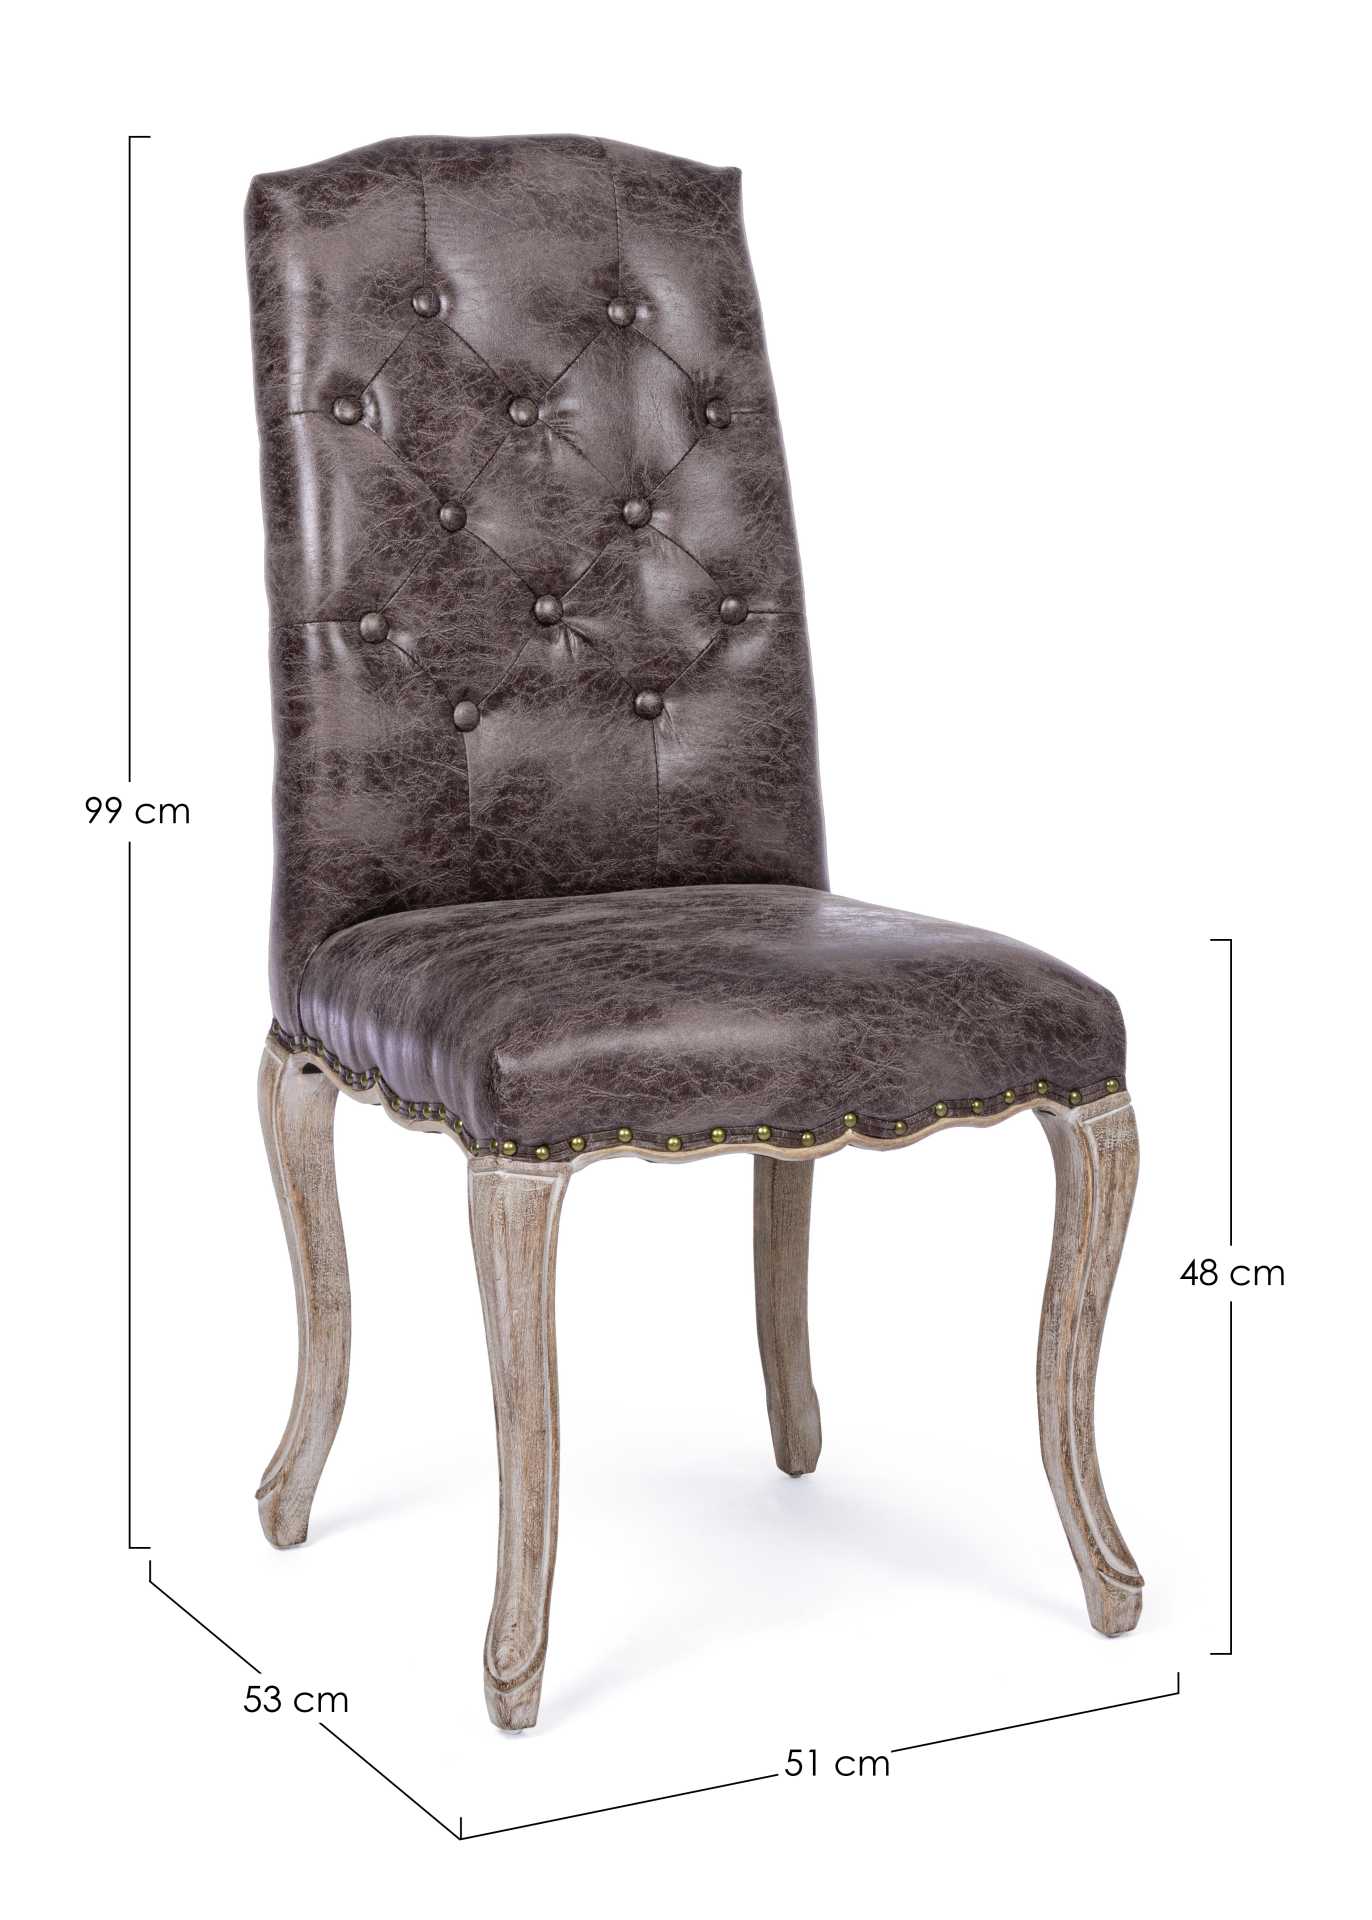 Der Esszimmerstuhl Diva überzeugt mit seinem klassischem Design. Gefertigt wurde der Stuhl aus einem Kunststoff-Bezug, welcher einen braunen Farbton besitzt. Das Gestell ist aus Holz und ist natürlich gehalten. Die Sitzhöhe beträgt 48 cm.